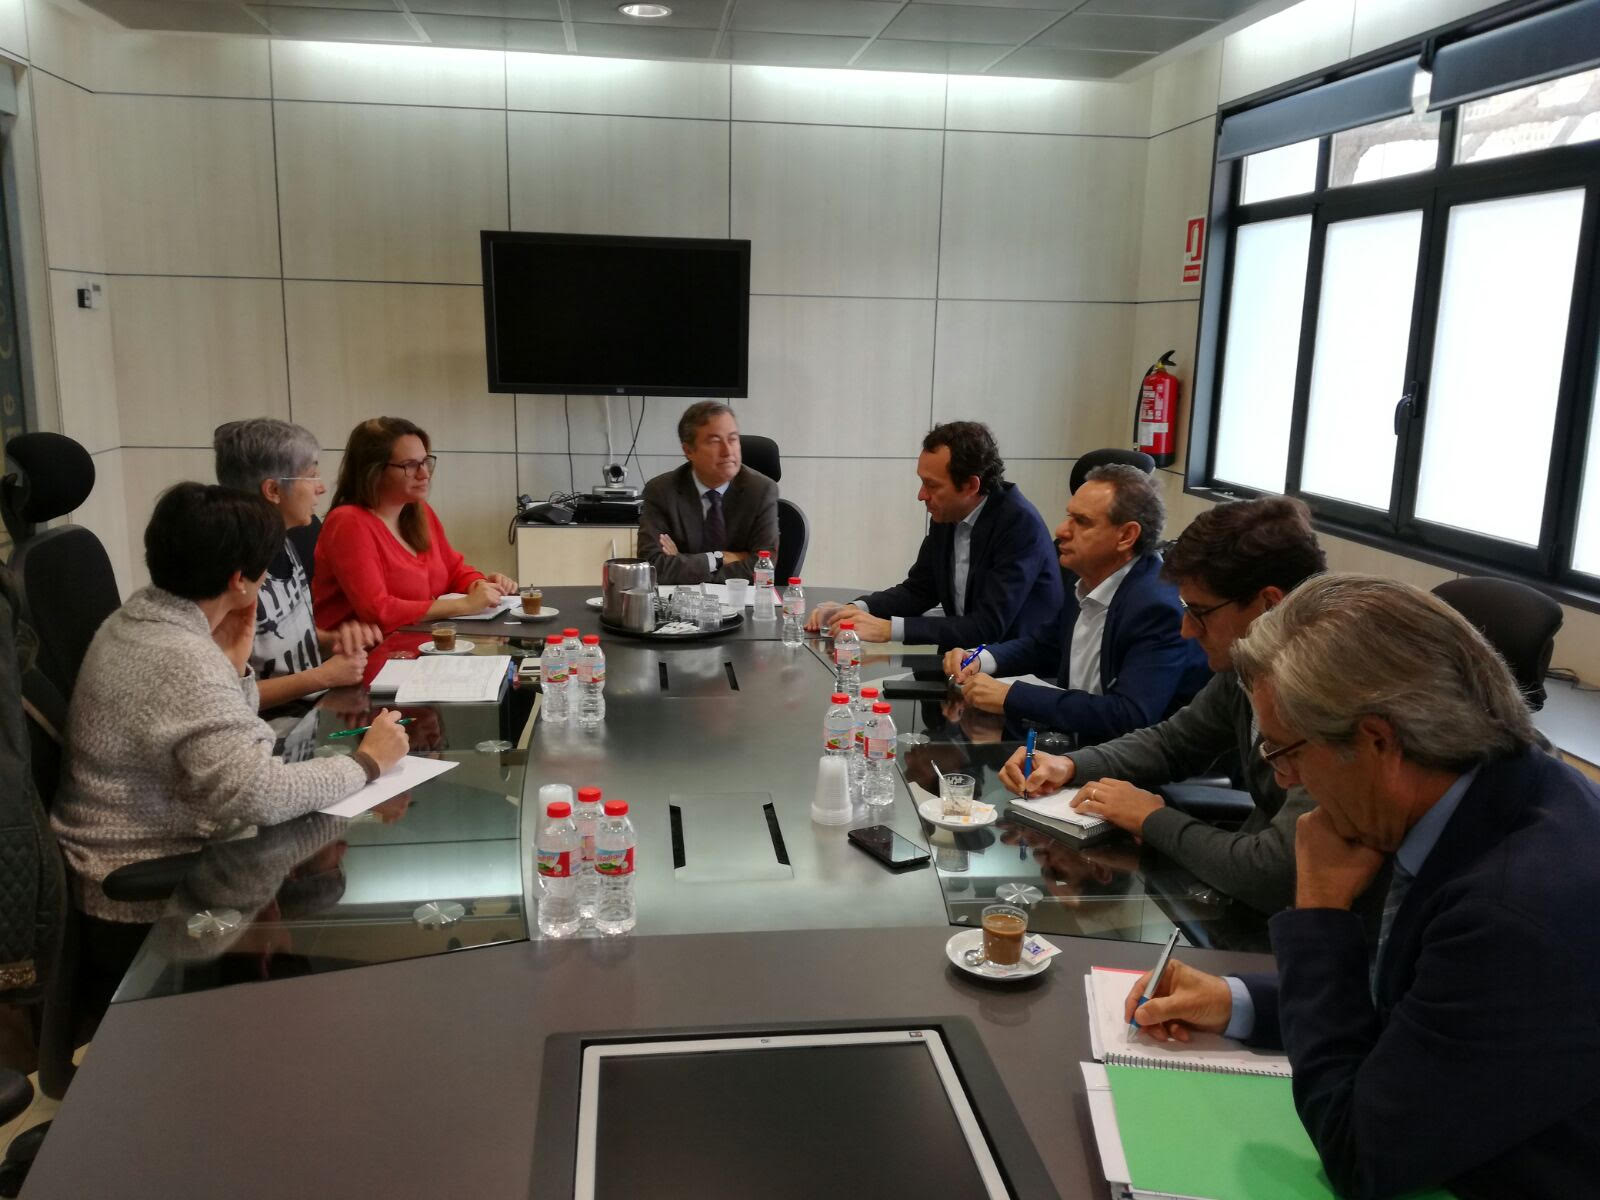 PortsIB, Autoridad Portuaria y los ayuntamientos de Ciutadella y Maó se reúnen para coordinar la actividad de los dos puertos